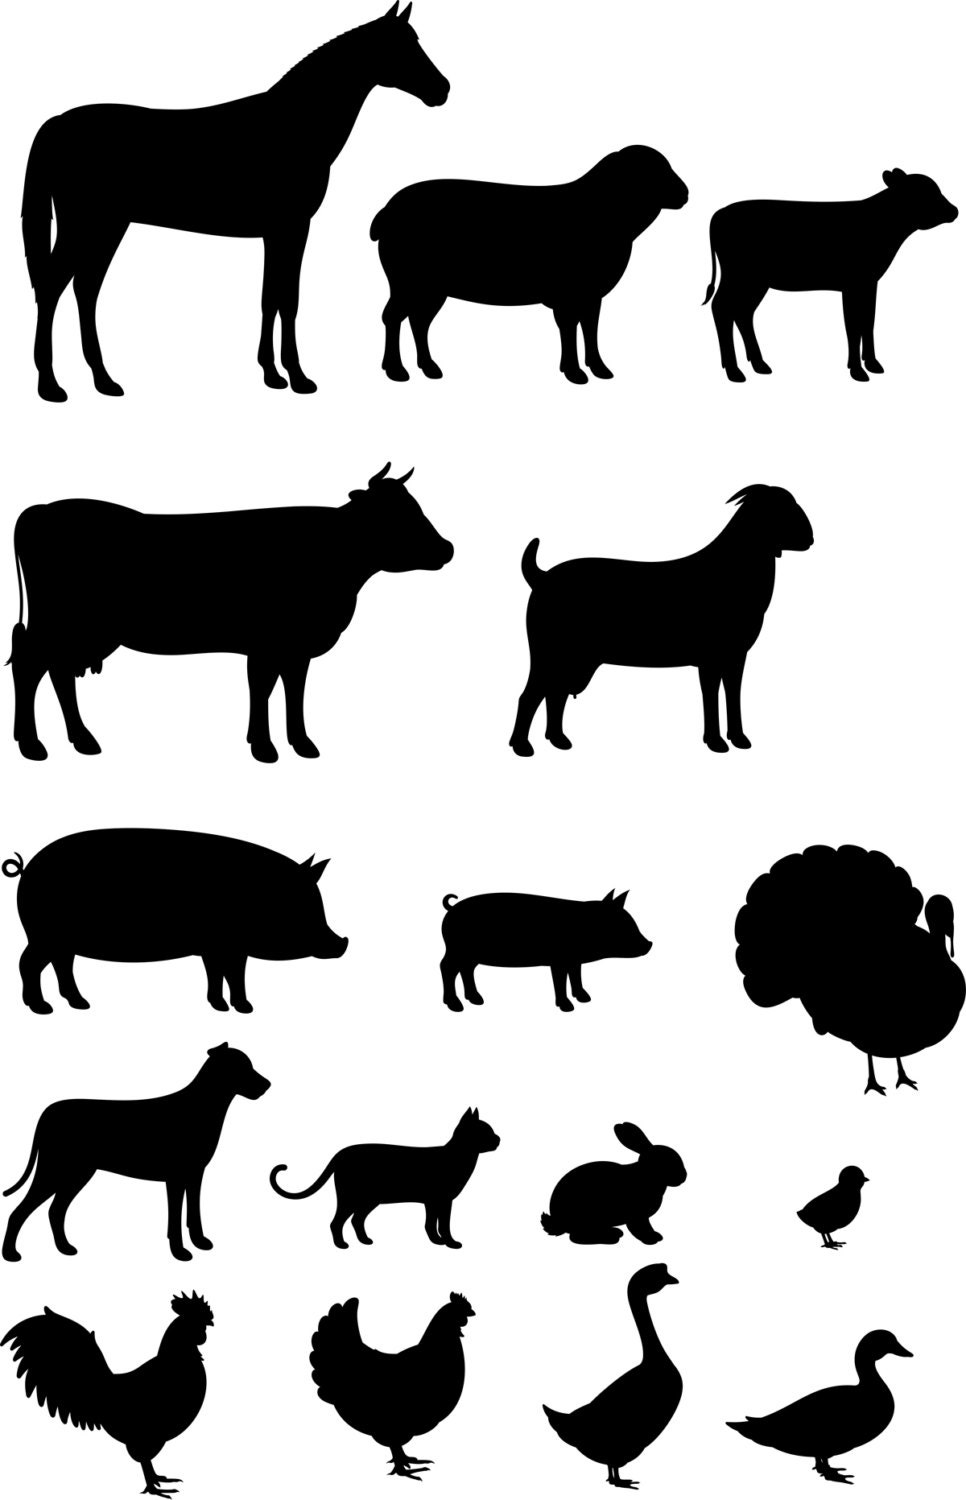 16 Farm Animals Silhouettes for cutting or machining Digital